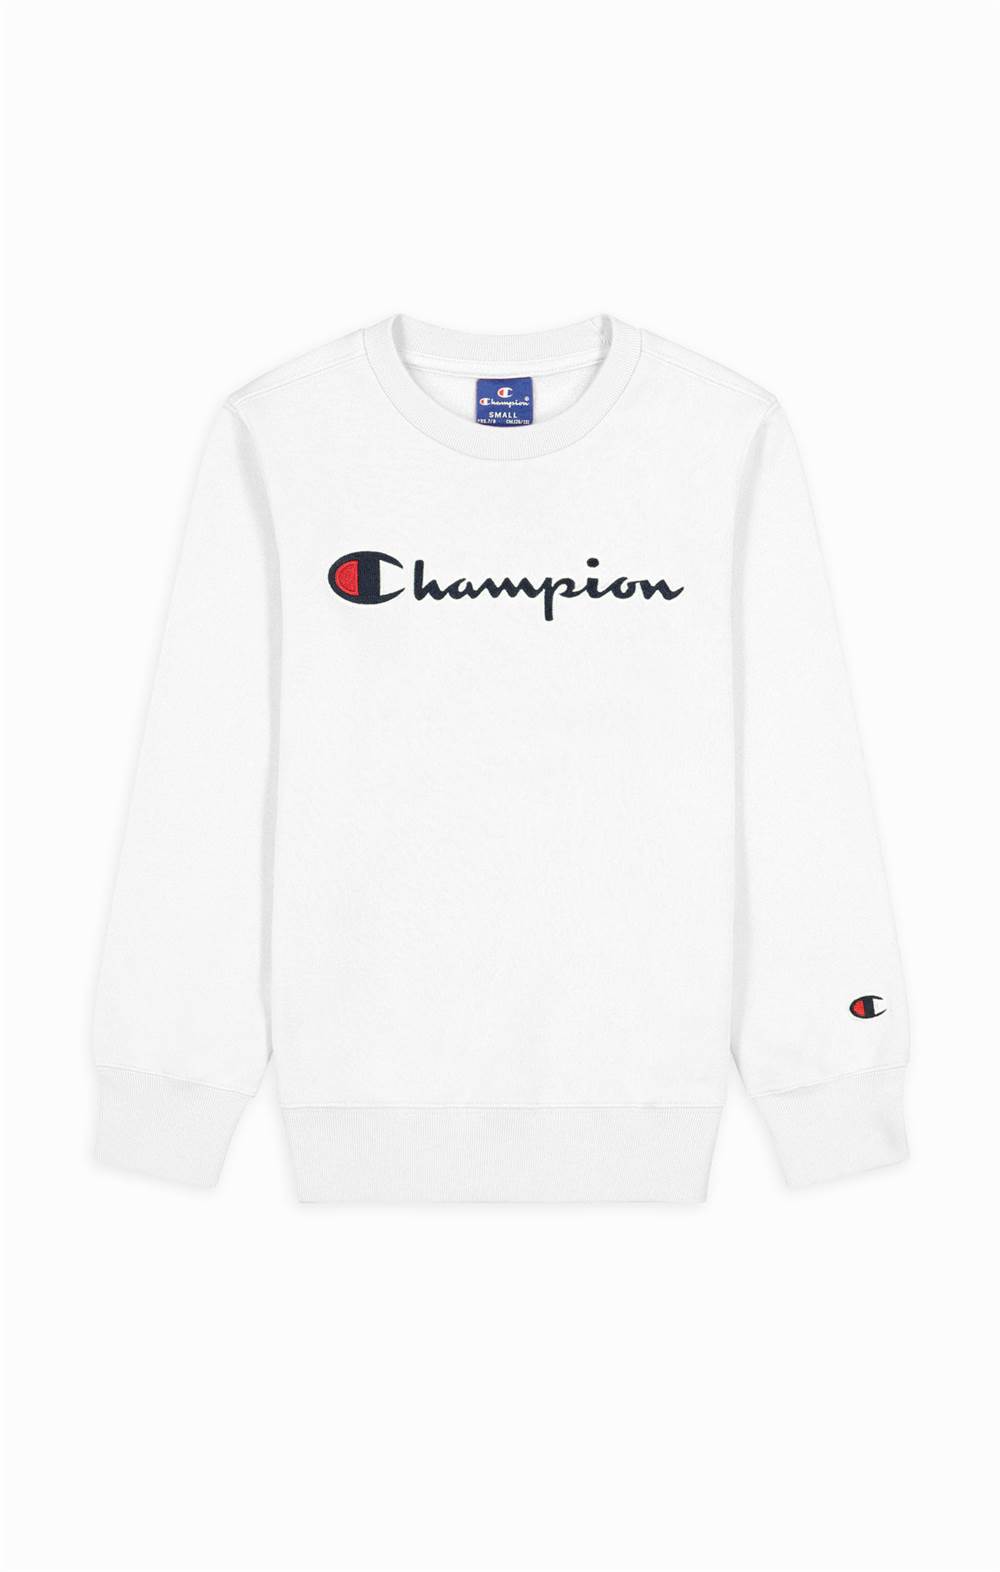 Køb Champion trøje